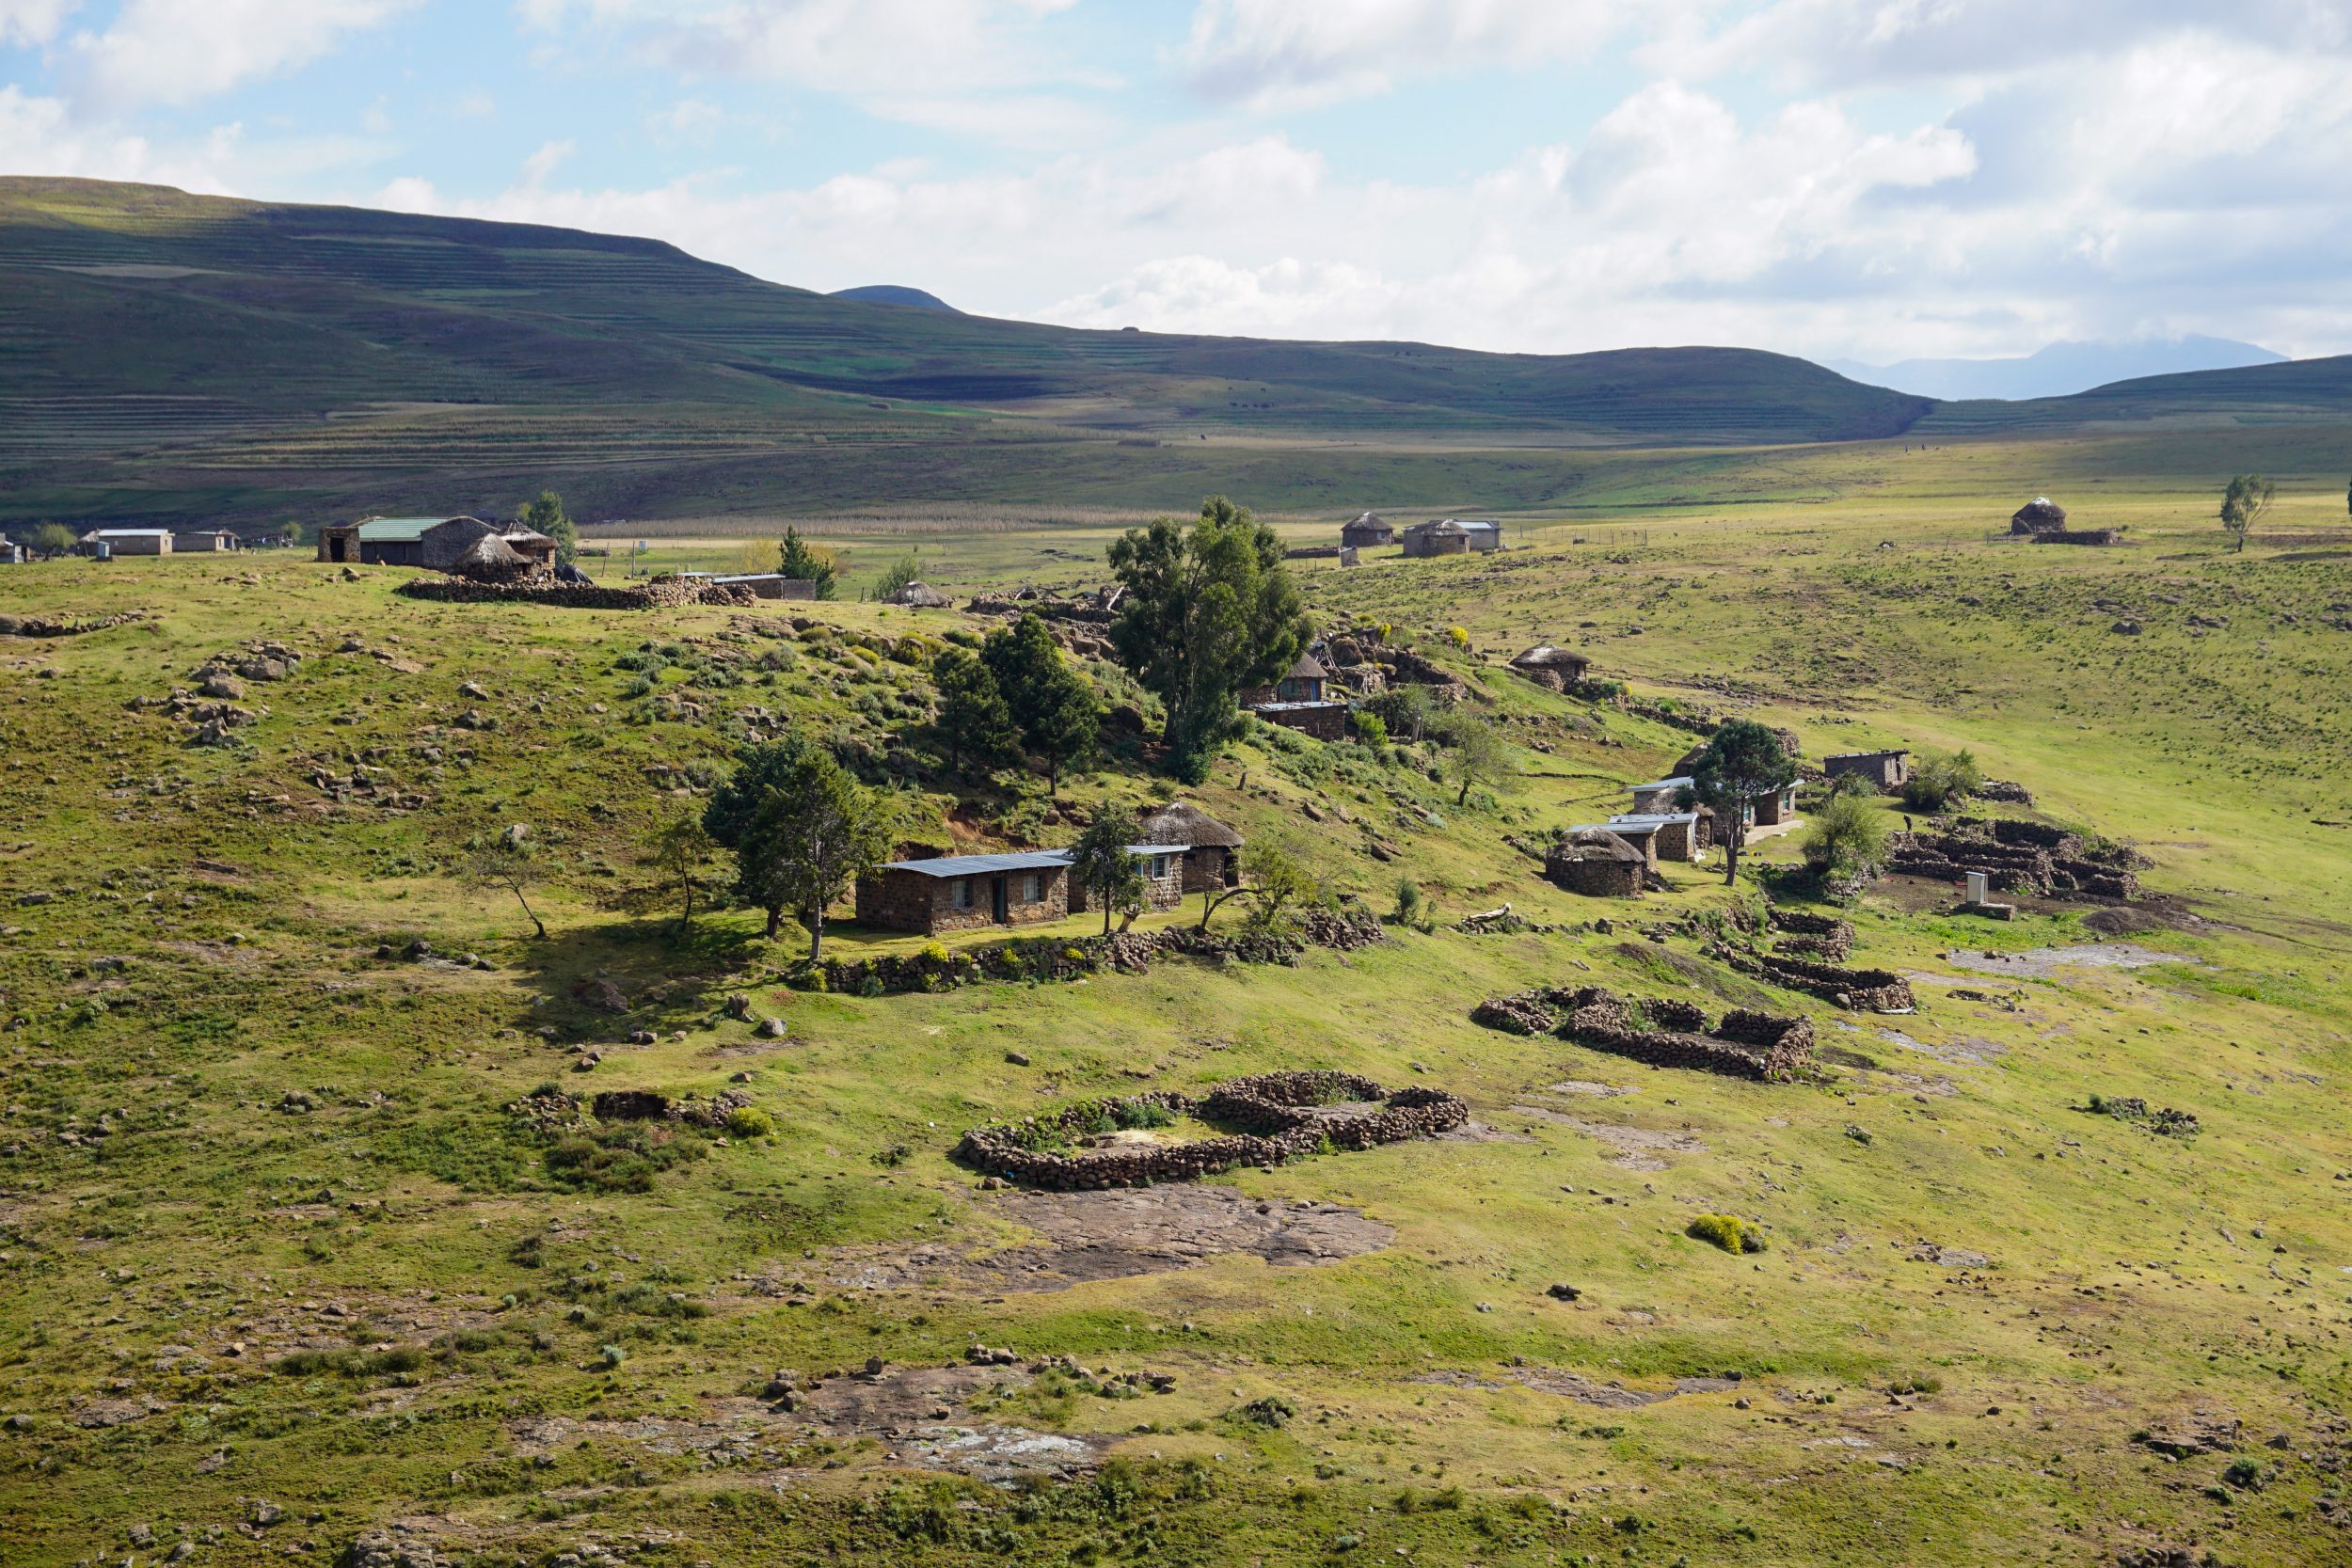 Semonkong Lesotho